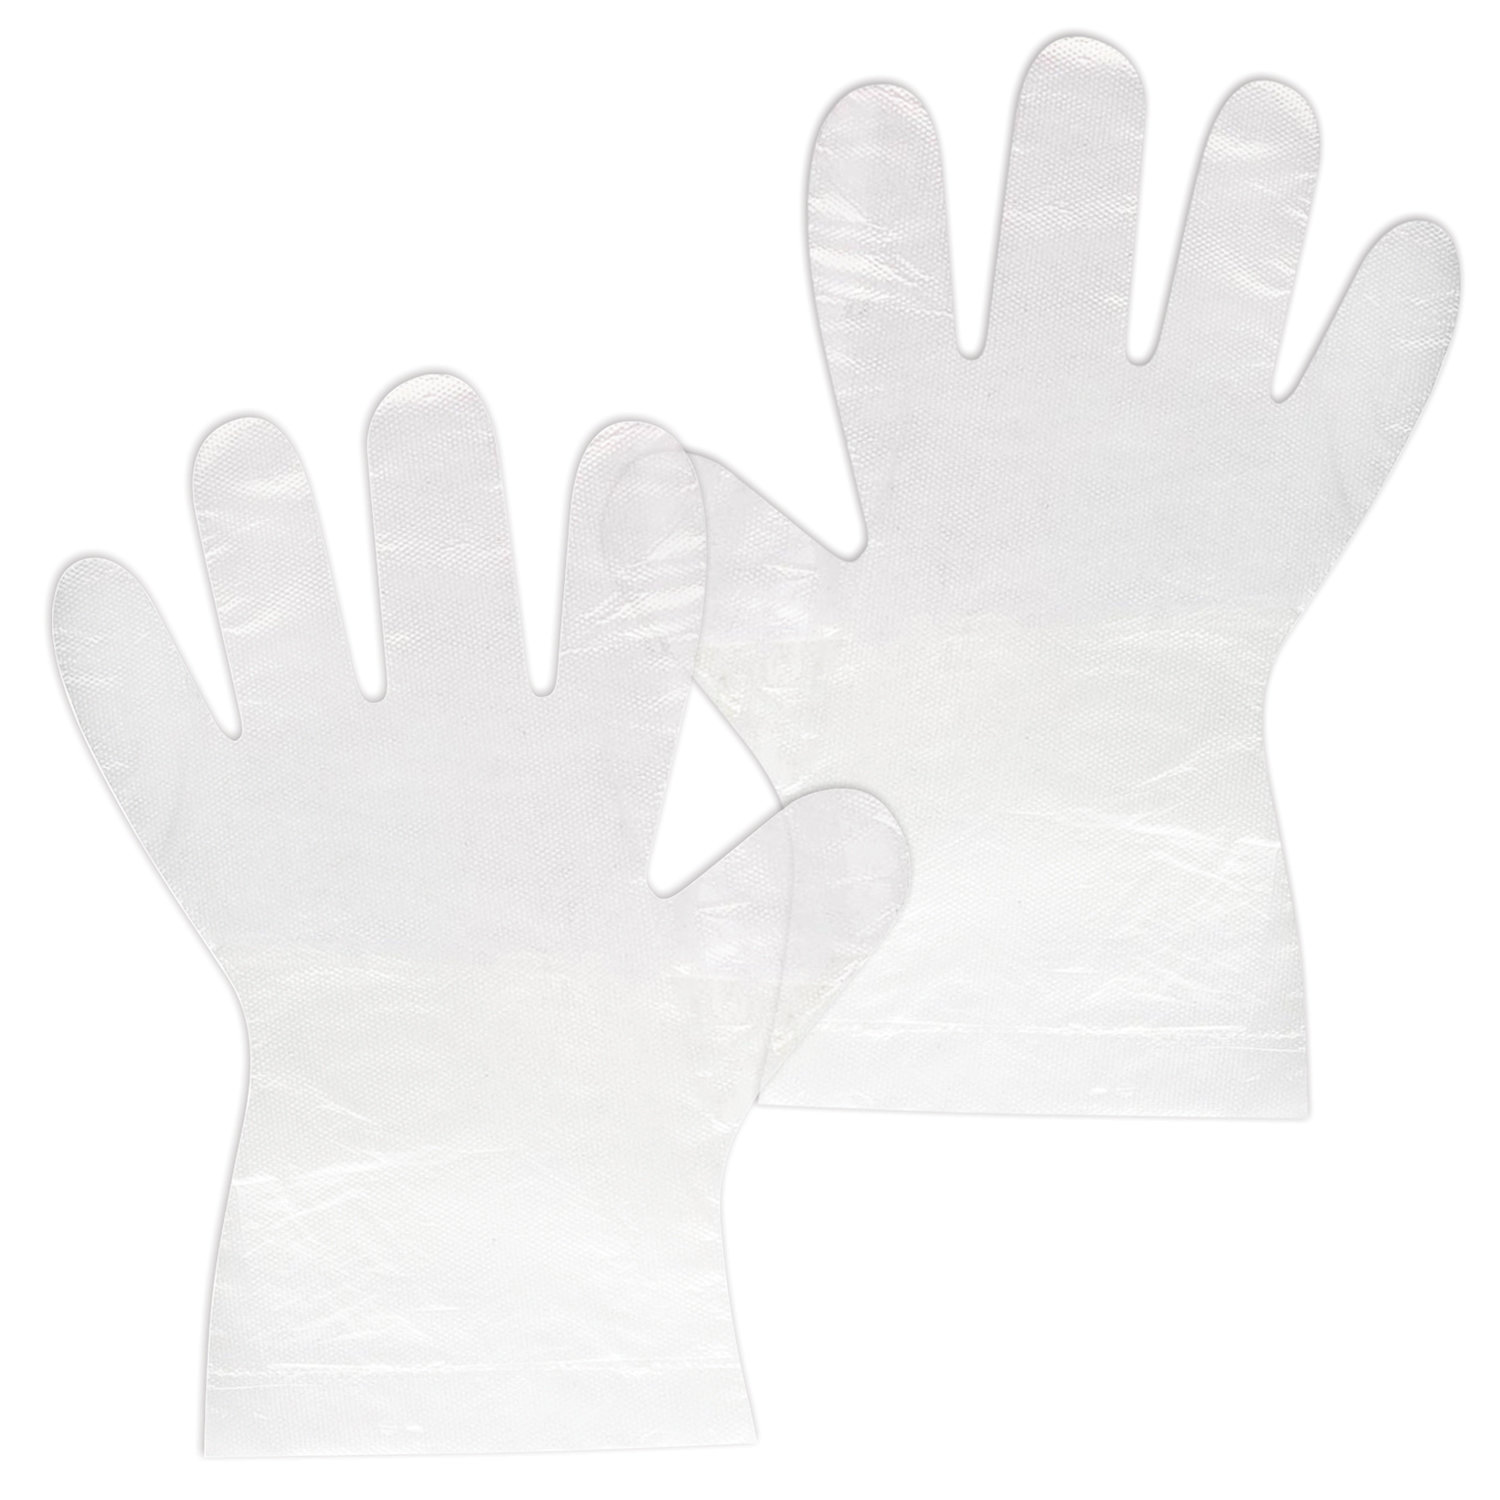 

Перчатки полиэтиленовые одноразовые OfficeClean, разм. , 50 пар 100шт, Серый